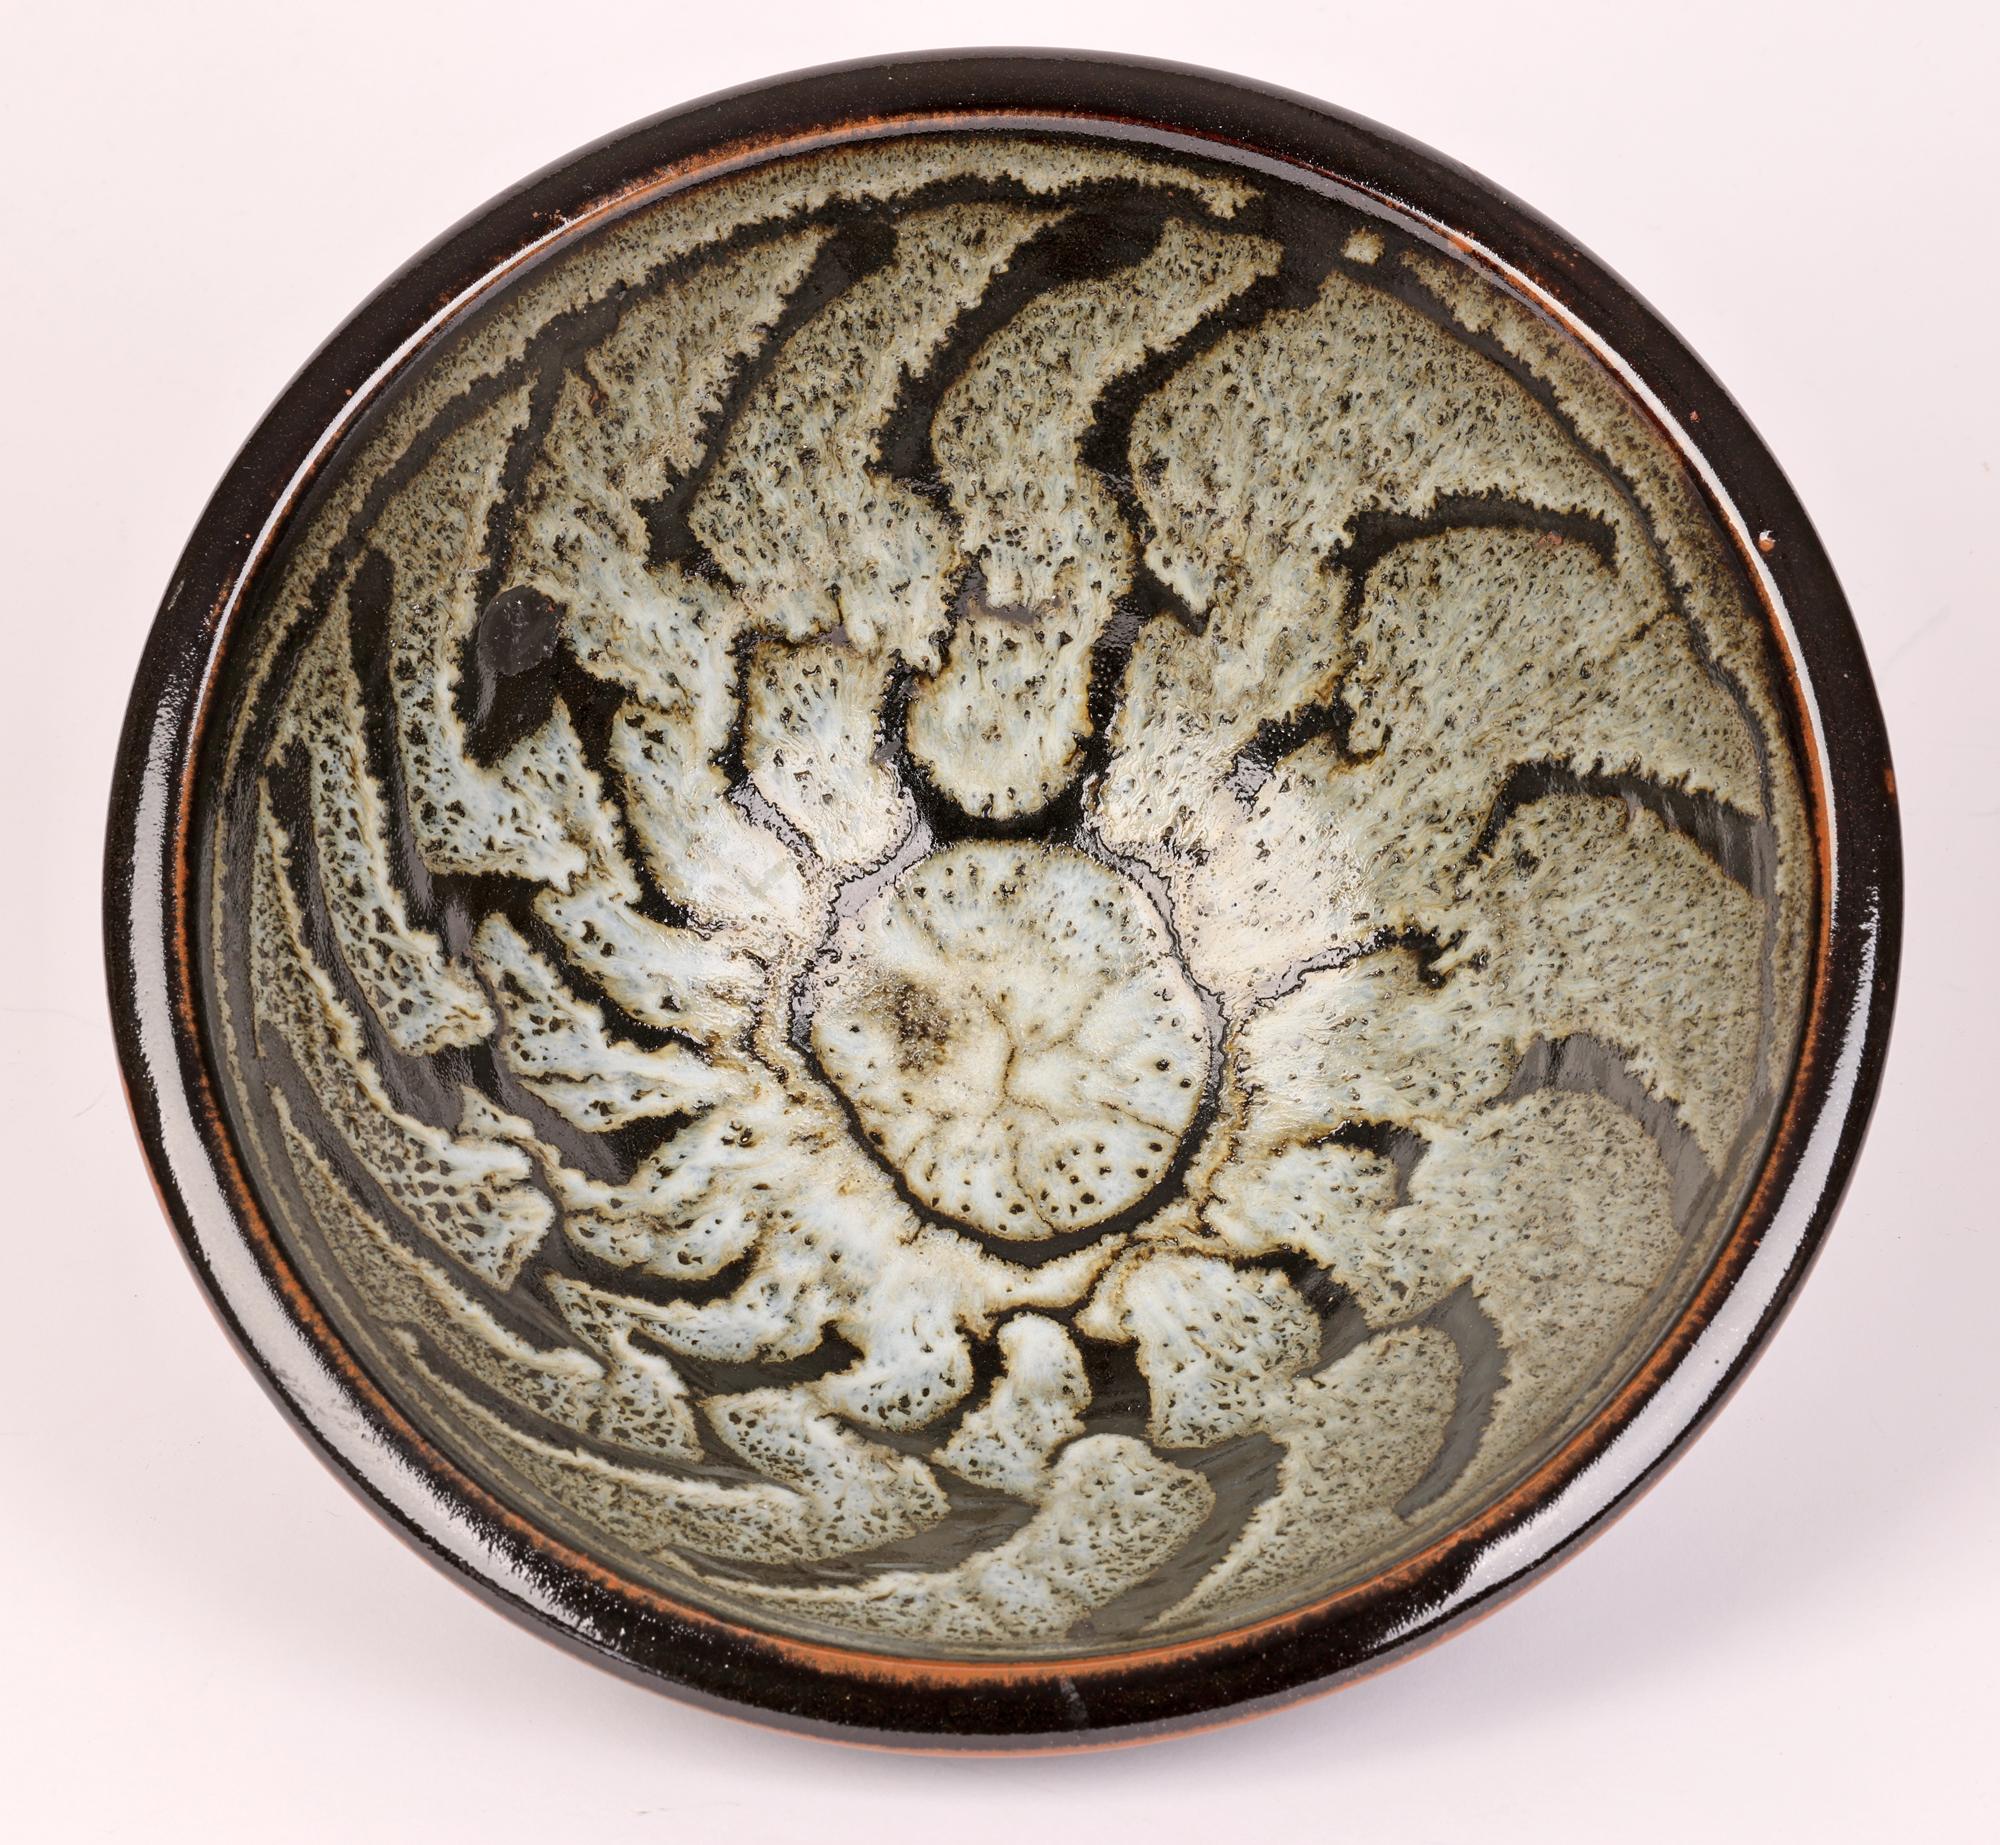 David Leach Tenmoku & Dolomite Glazed Wax Resist Studio Pottery Bowl 4